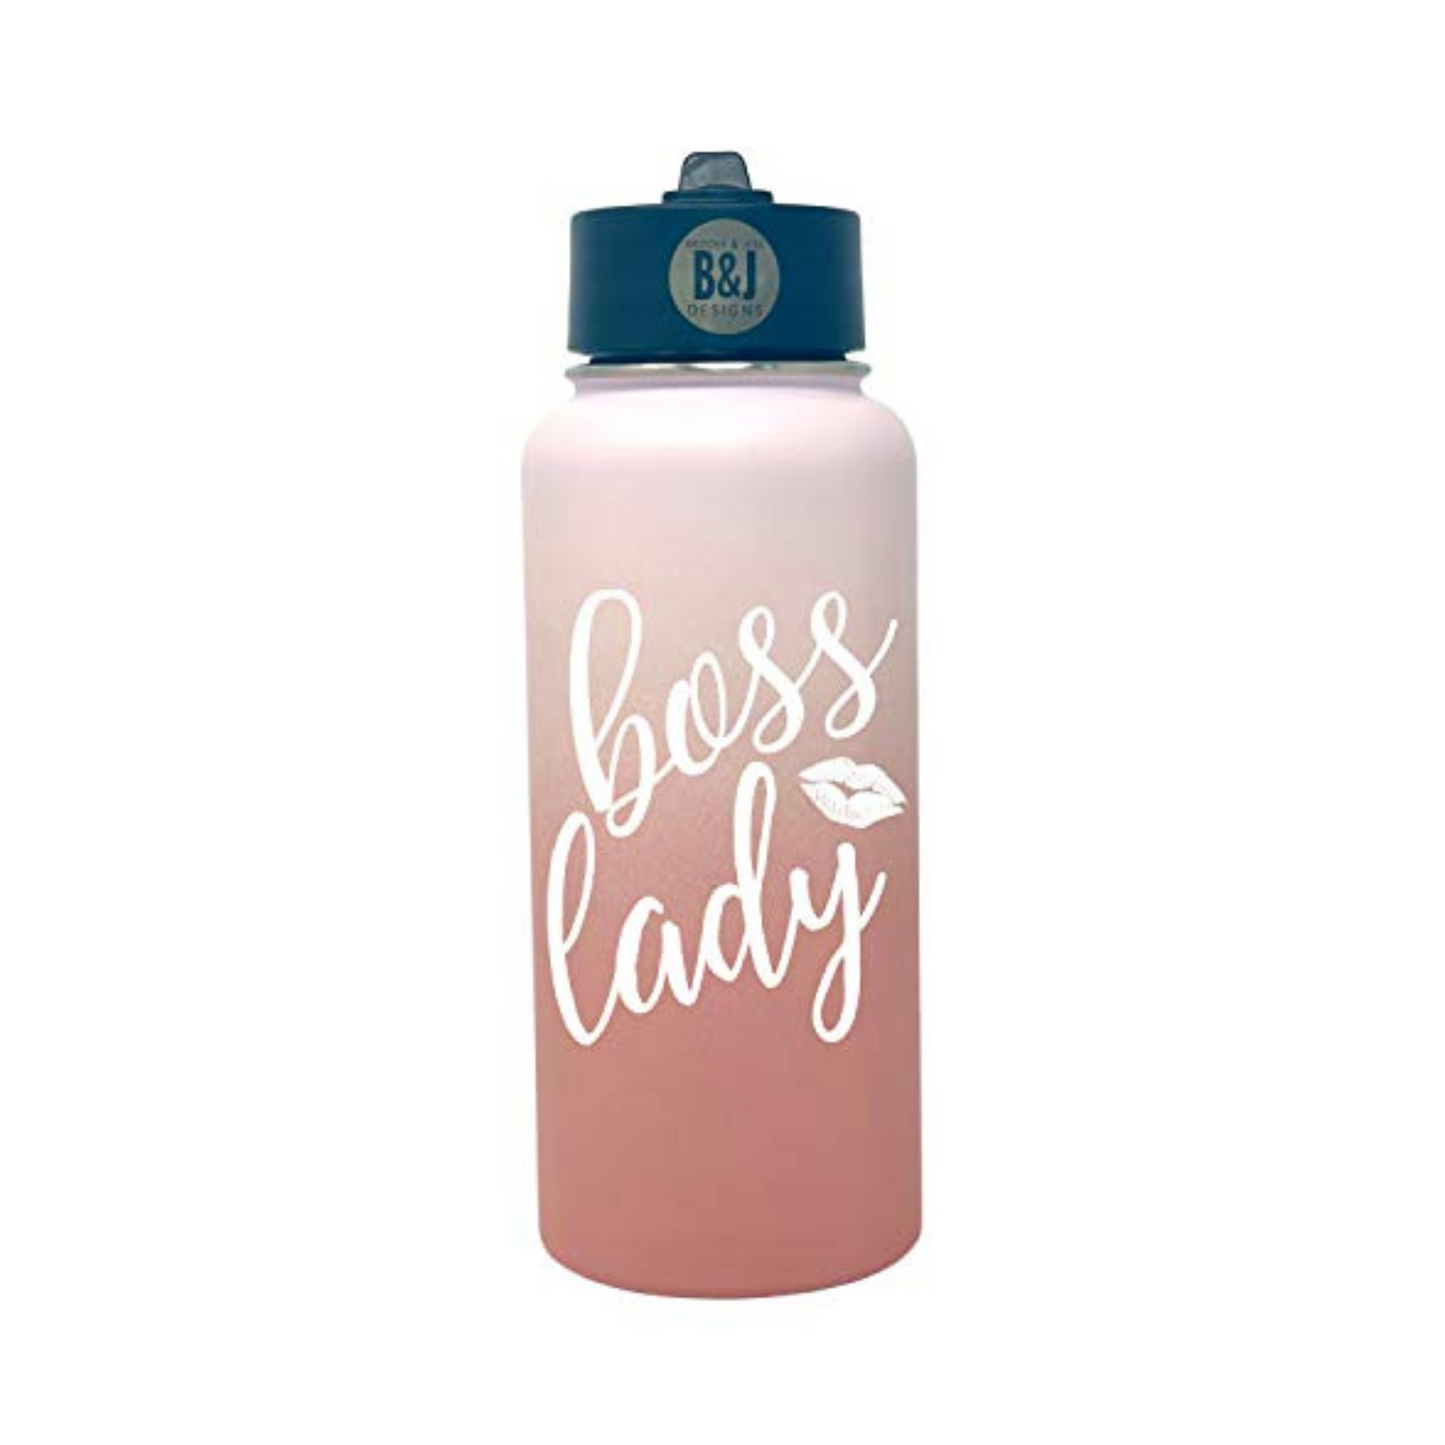 Boss Lady 32 oz Rose Gold Water Bottle for Bosses